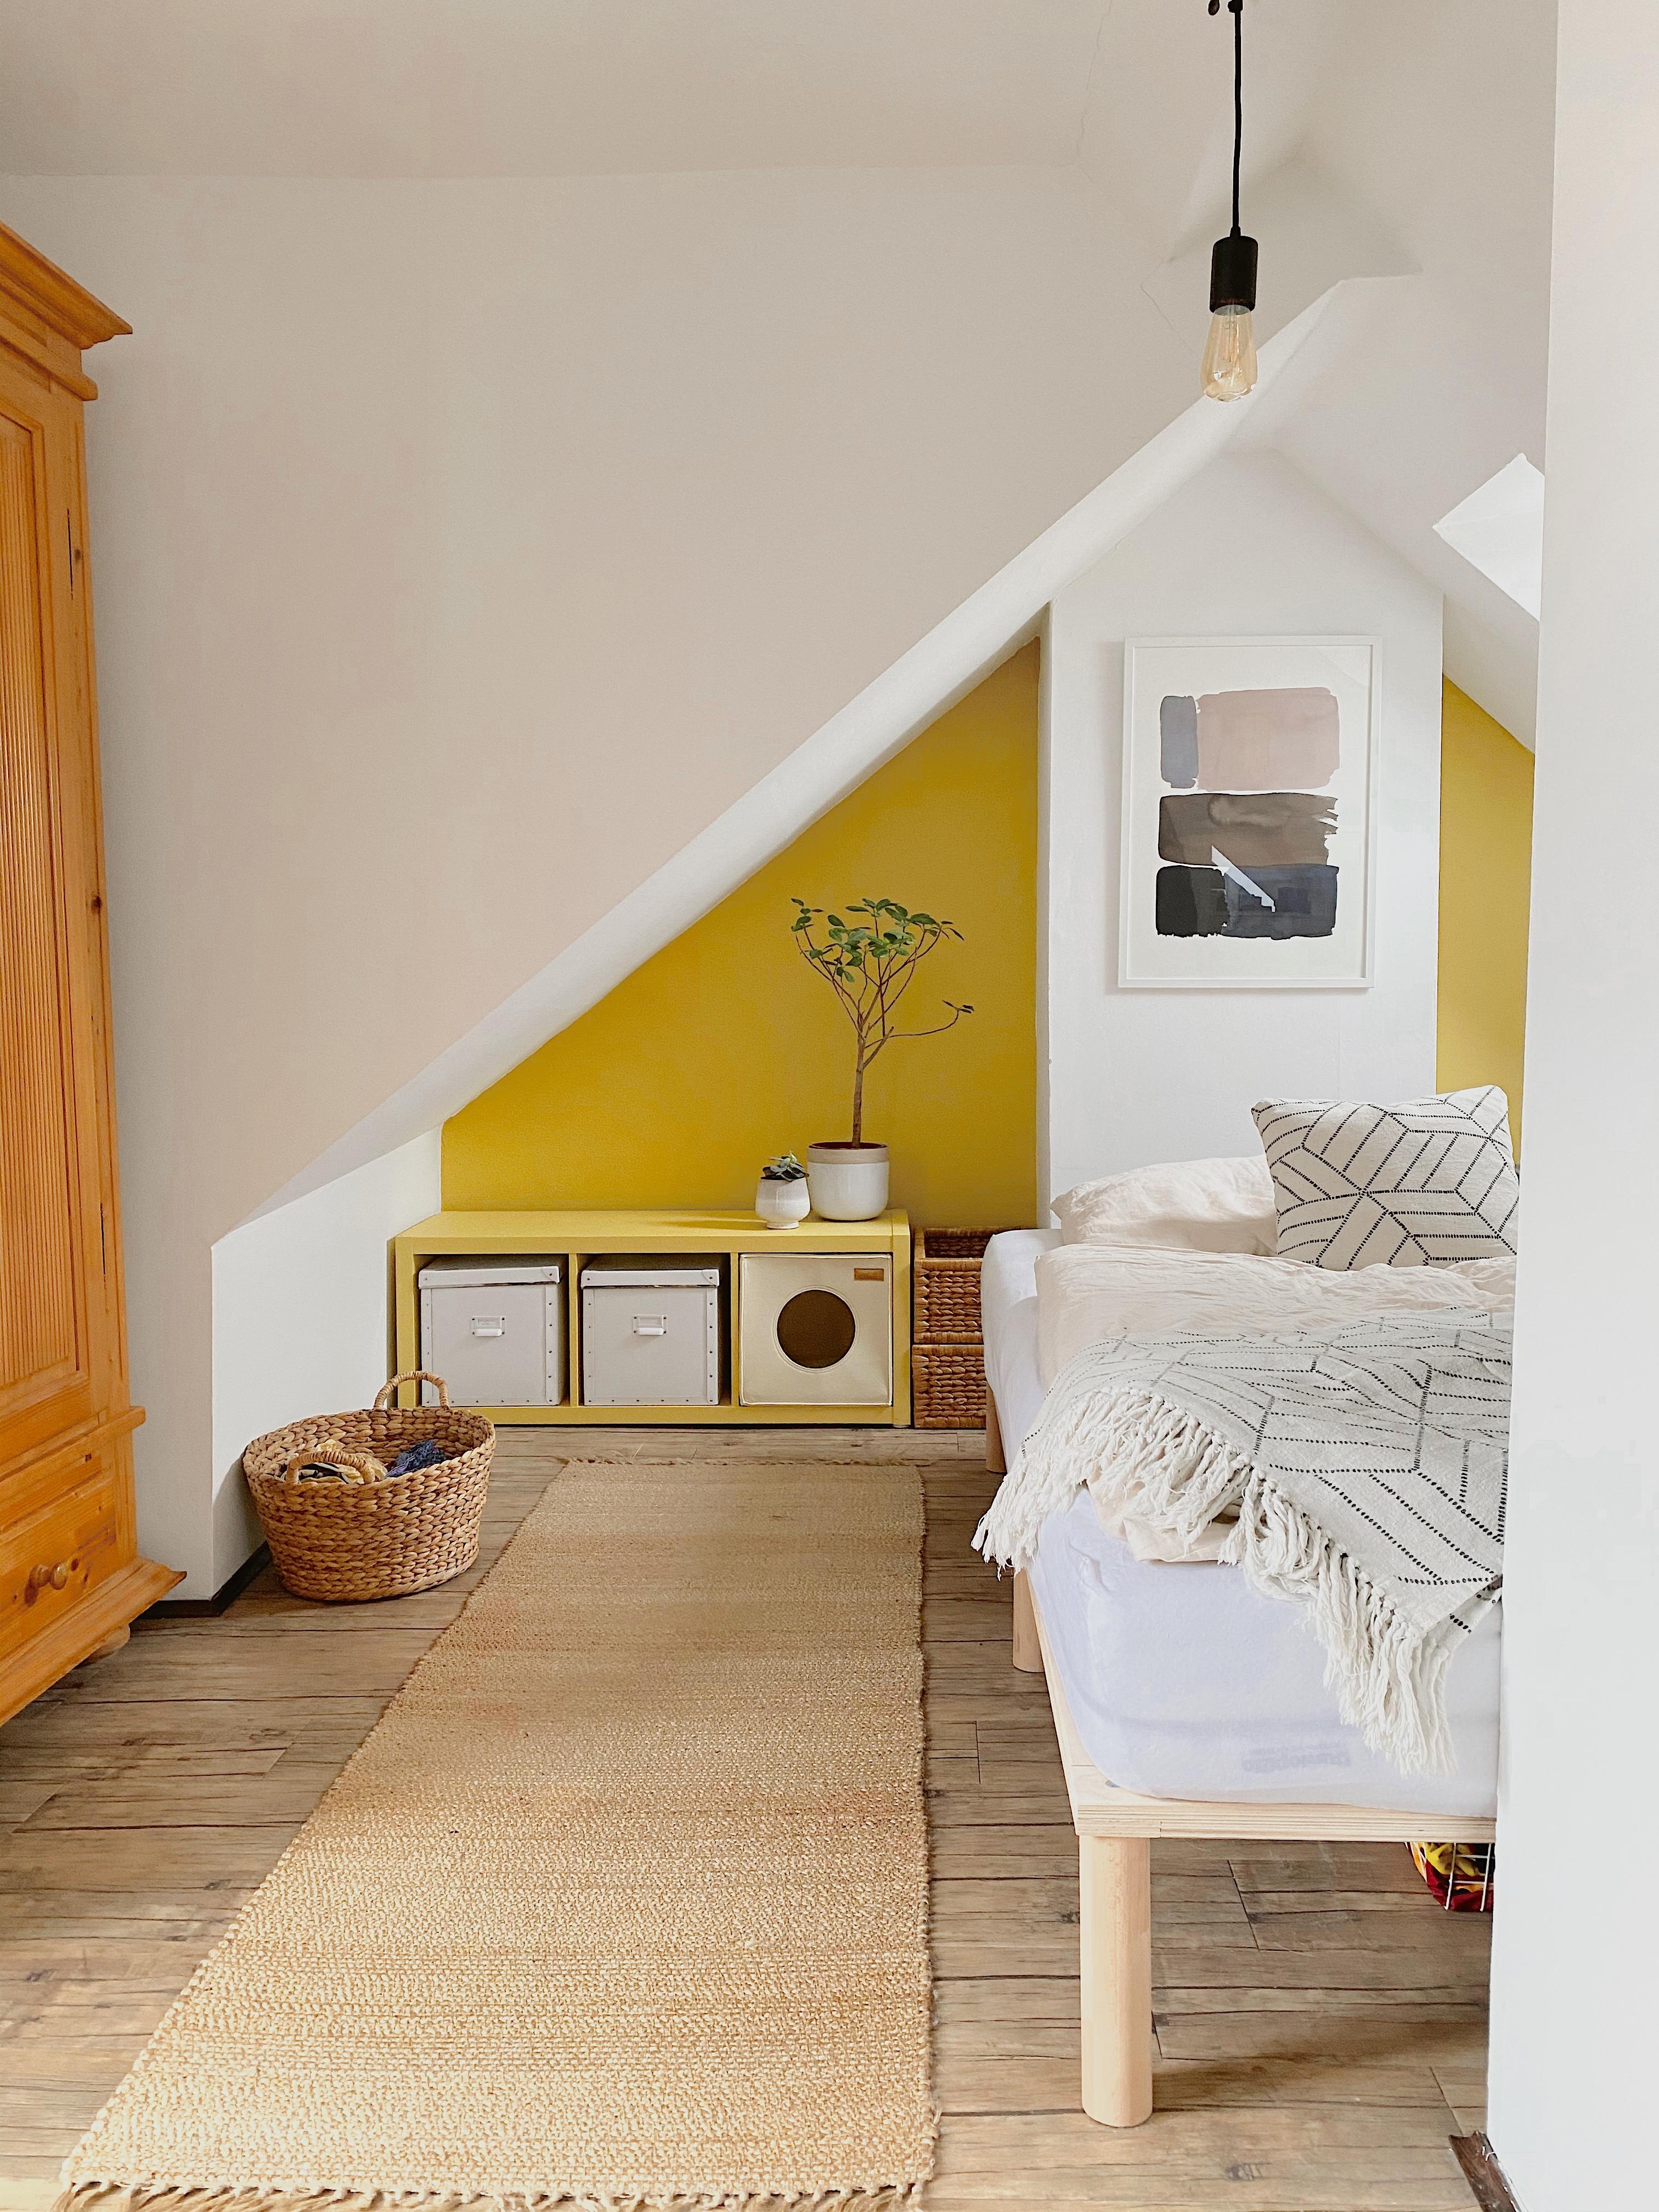 Unser Schlafzimmer unterm Dach. Fühlt sich dank der Schrägen und dem gelb, immer wie im Urlaub an!
#summer #iamready